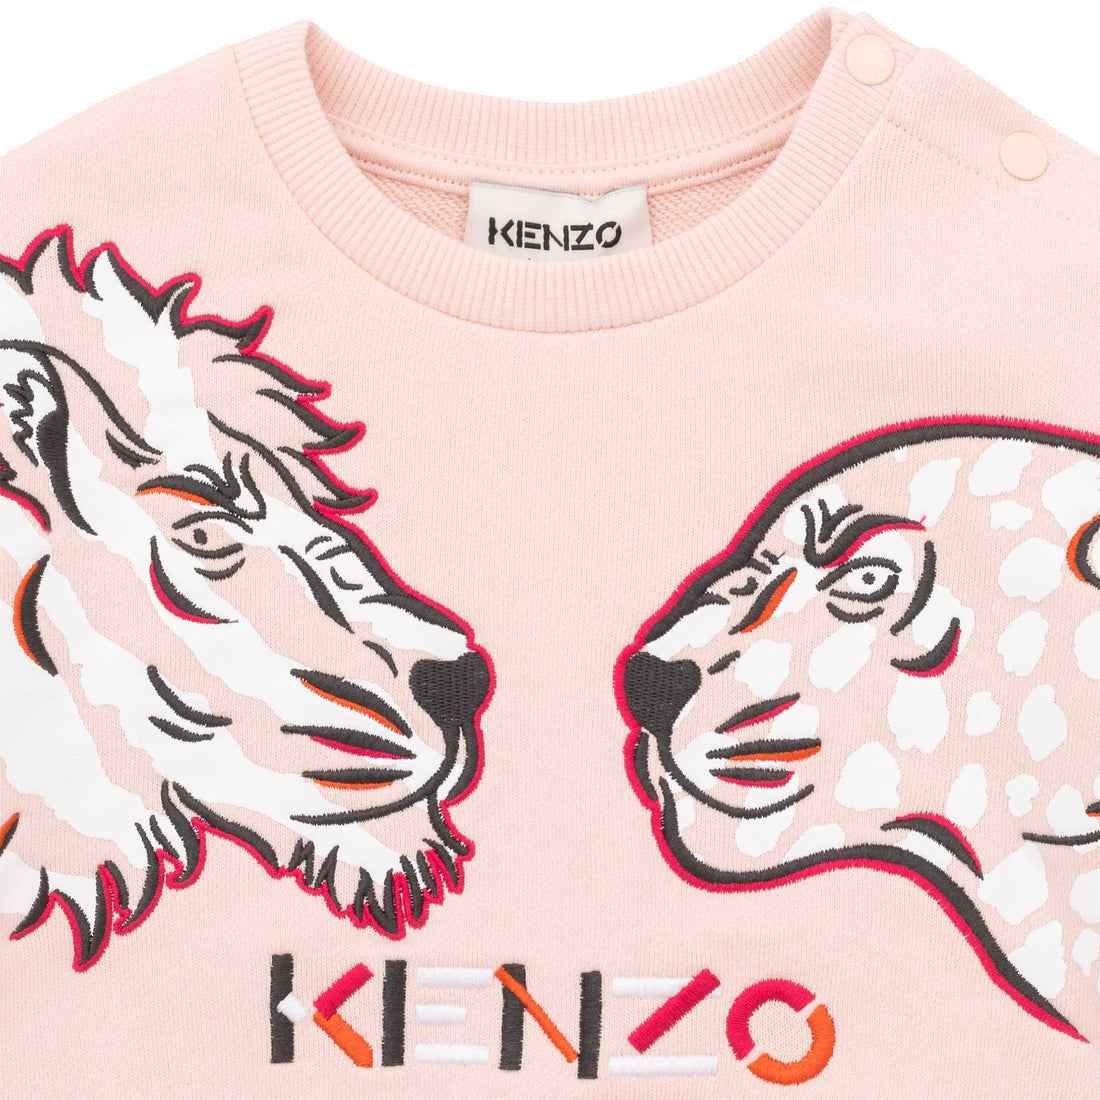 Kenzo Sweatshirt Style: K05415